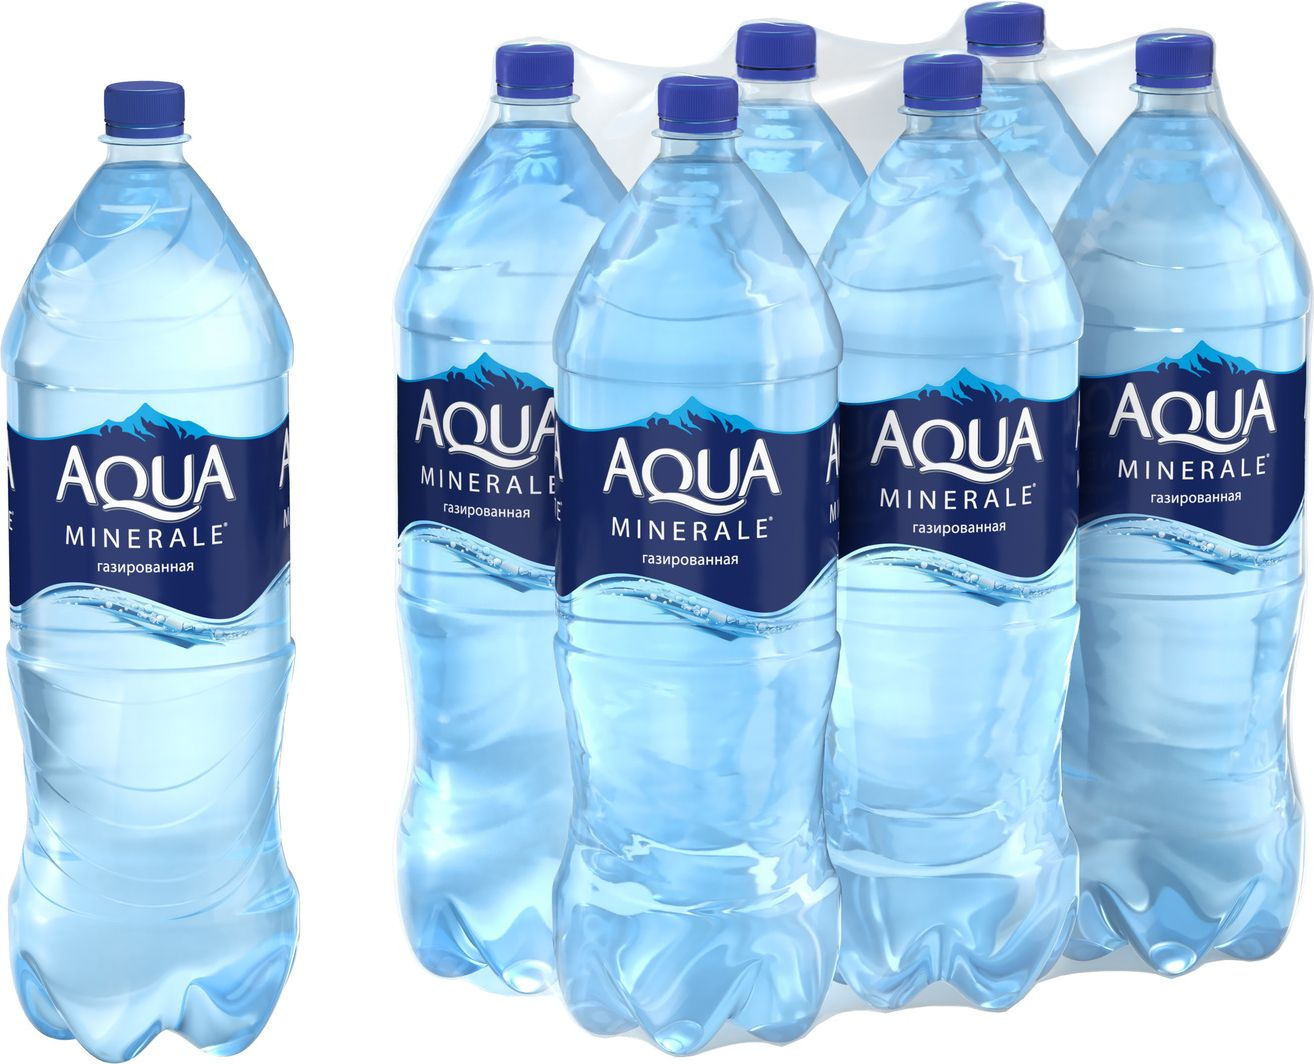 Aqua Minerale вода газированная питьевая, 6 штук по 2 л